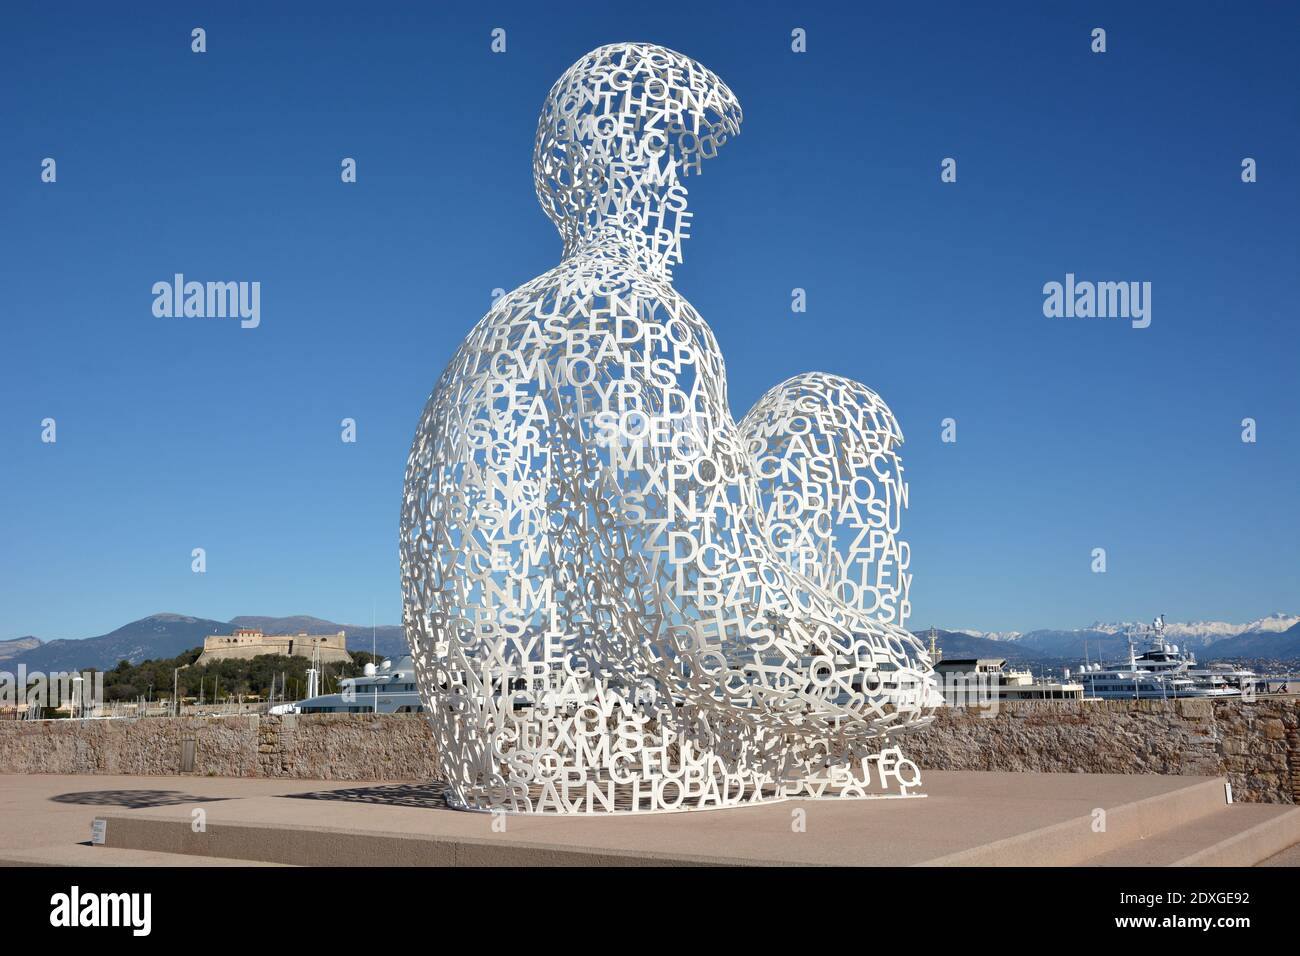 Francia, costa azzurra, Antibes, la Nomade dell'artista spagnolo Jaume Plenza, una scultura di una figura squadrante fatta di lettere dipinte in acciaio bianco. Foto Stock